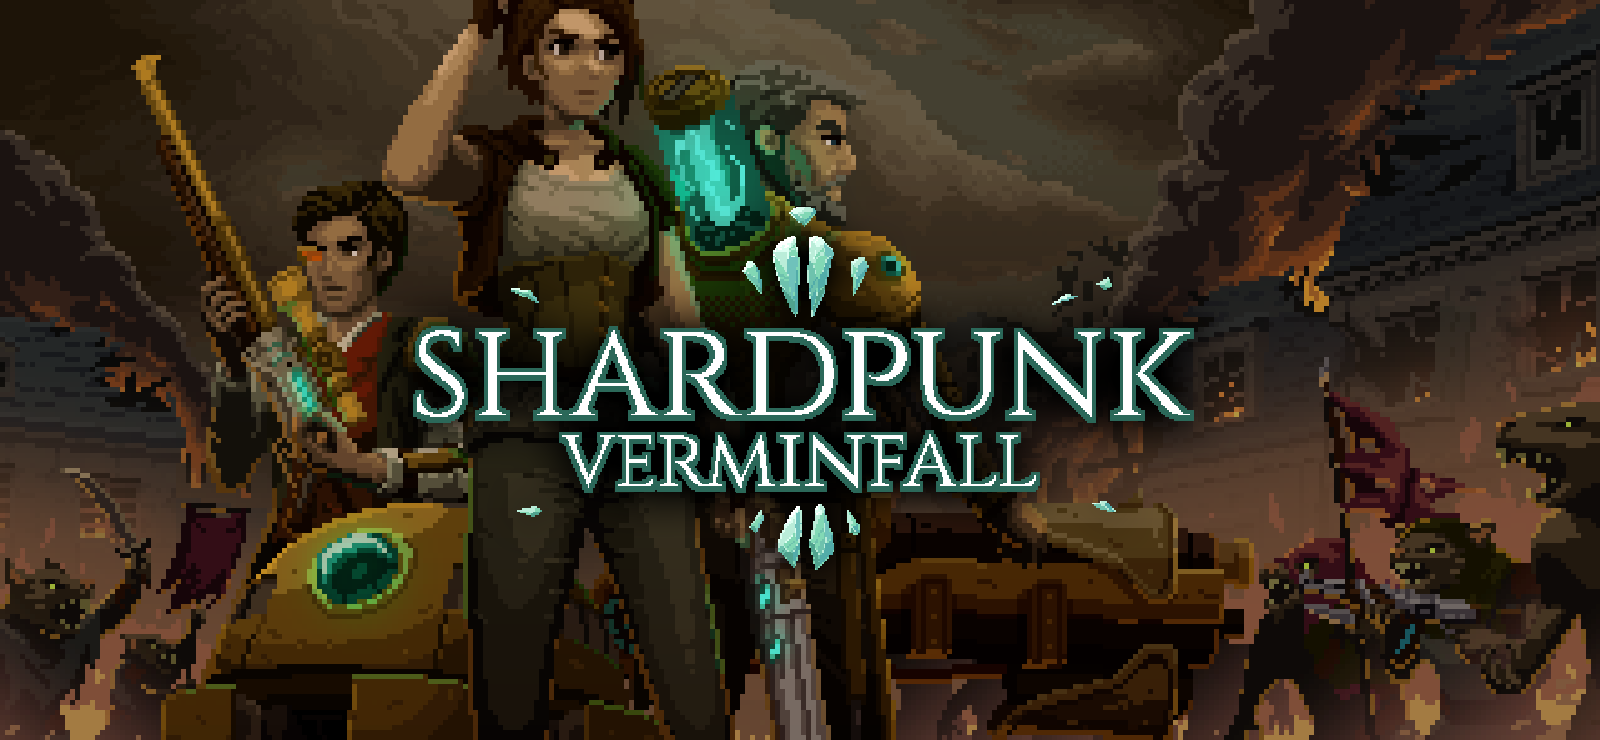 Shardpunk: Verminfall, presto in arrivo su PC 2